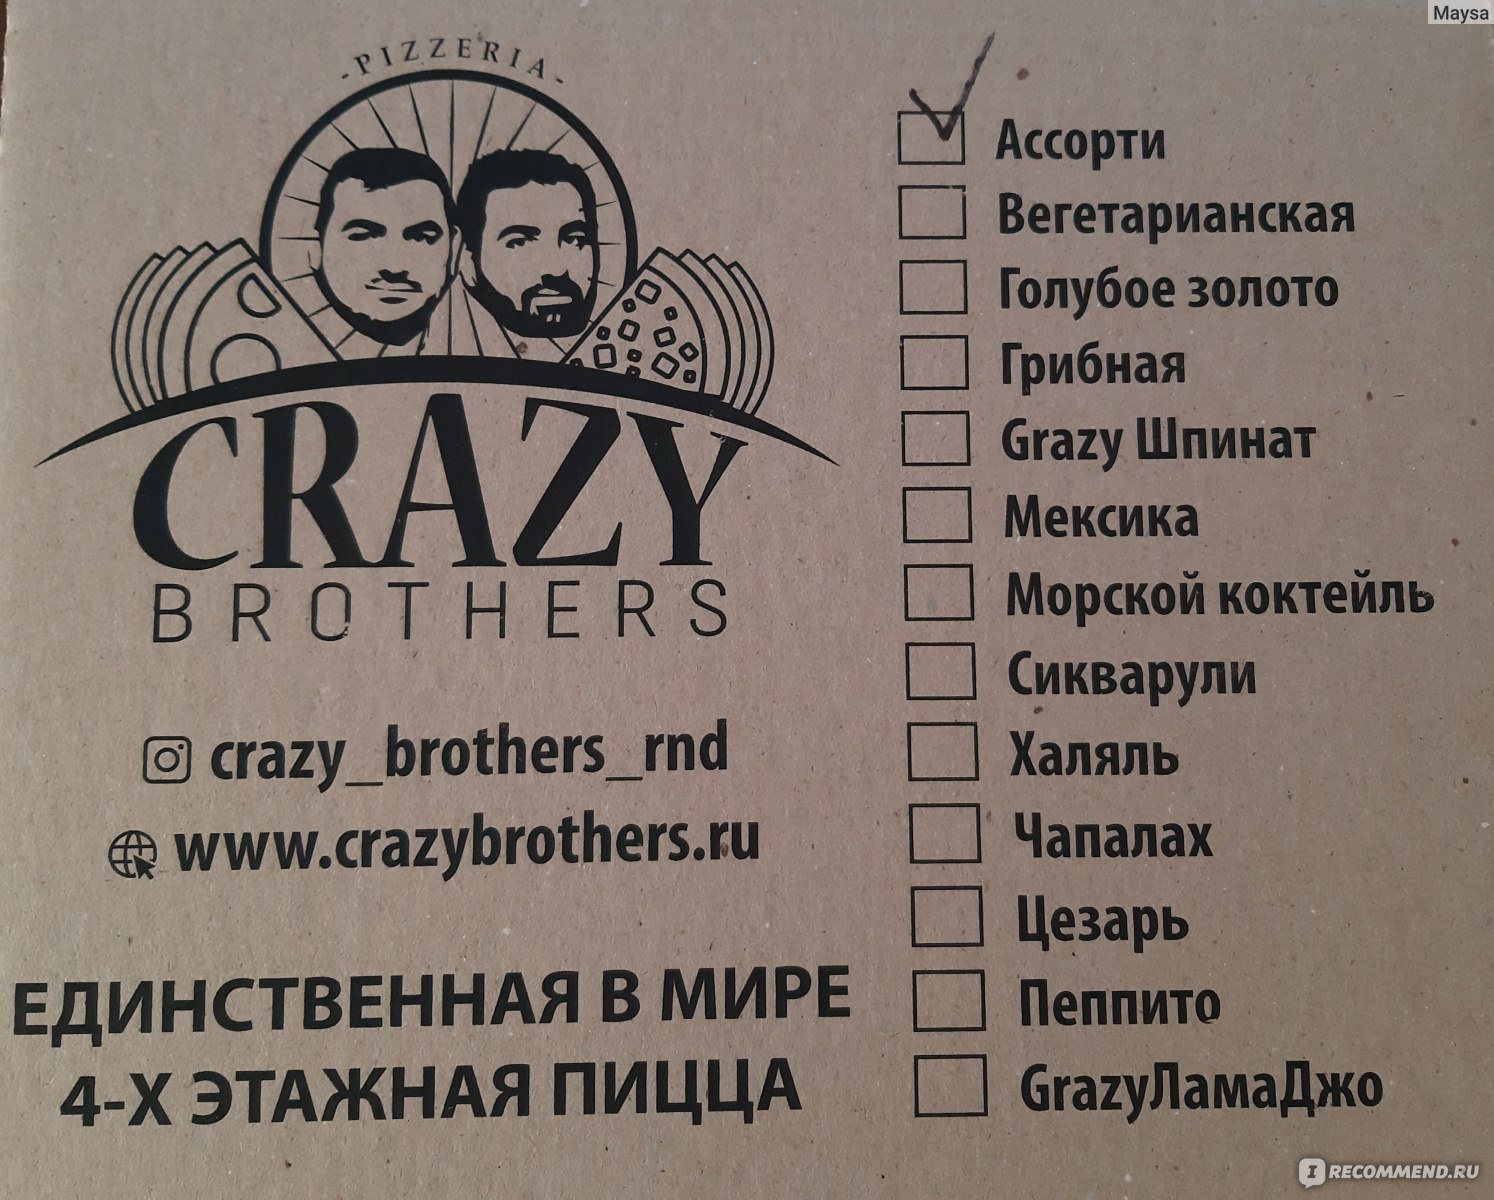 Crazy brothers. Crazy brothers Ростов на Дону. Crazy brothers пицца Ростов. Сумасшедшие братья пиццерия. Crazy brothers Волгоград.